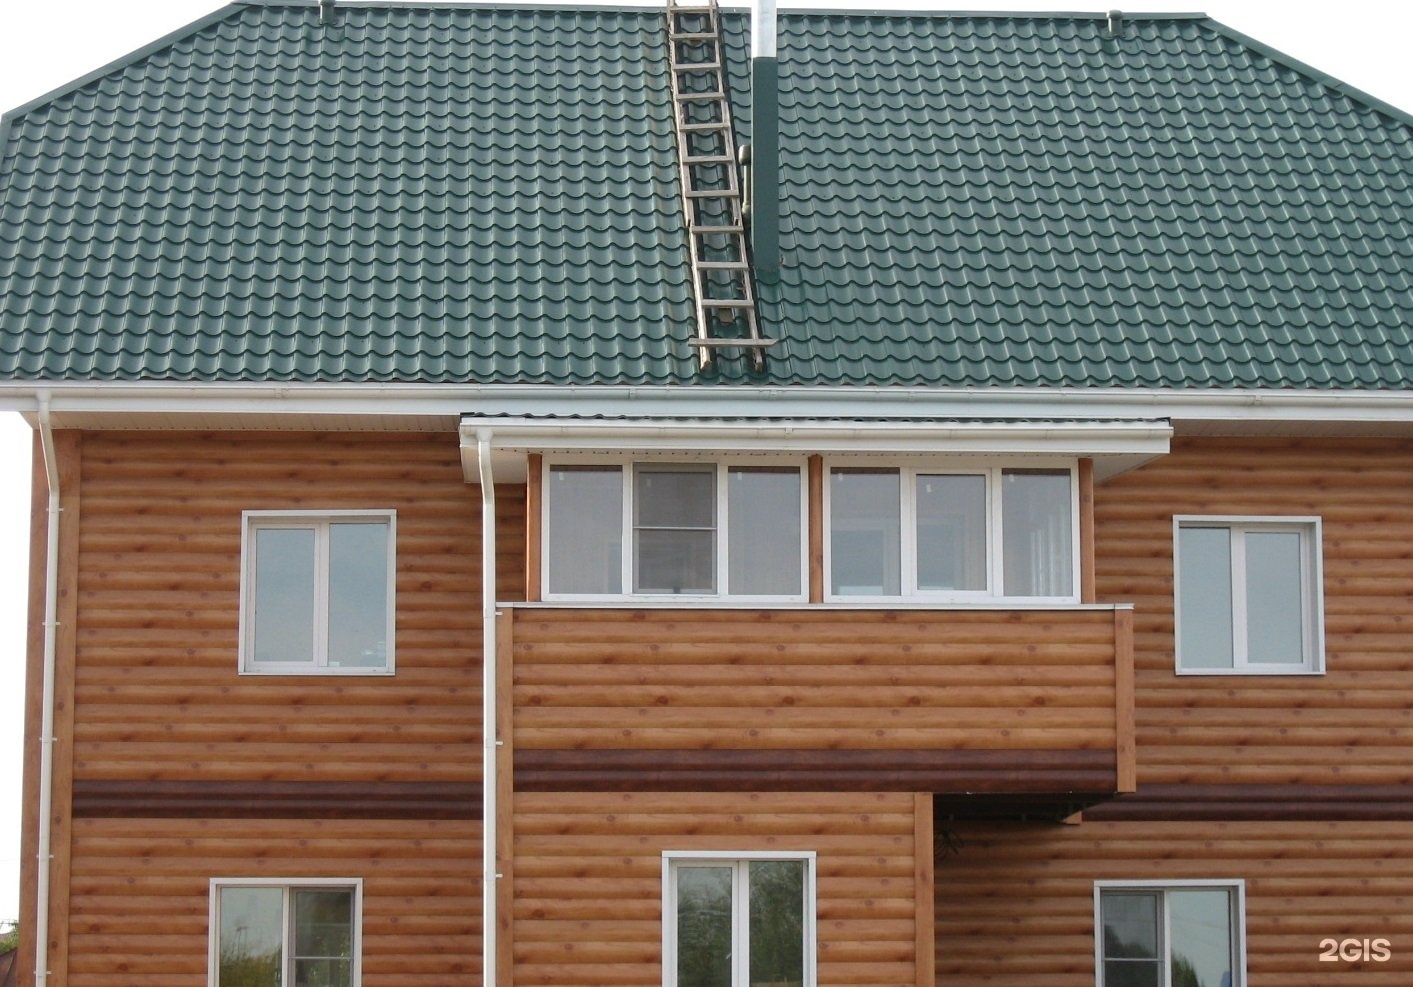 Брусовой дом с зеленой крышей